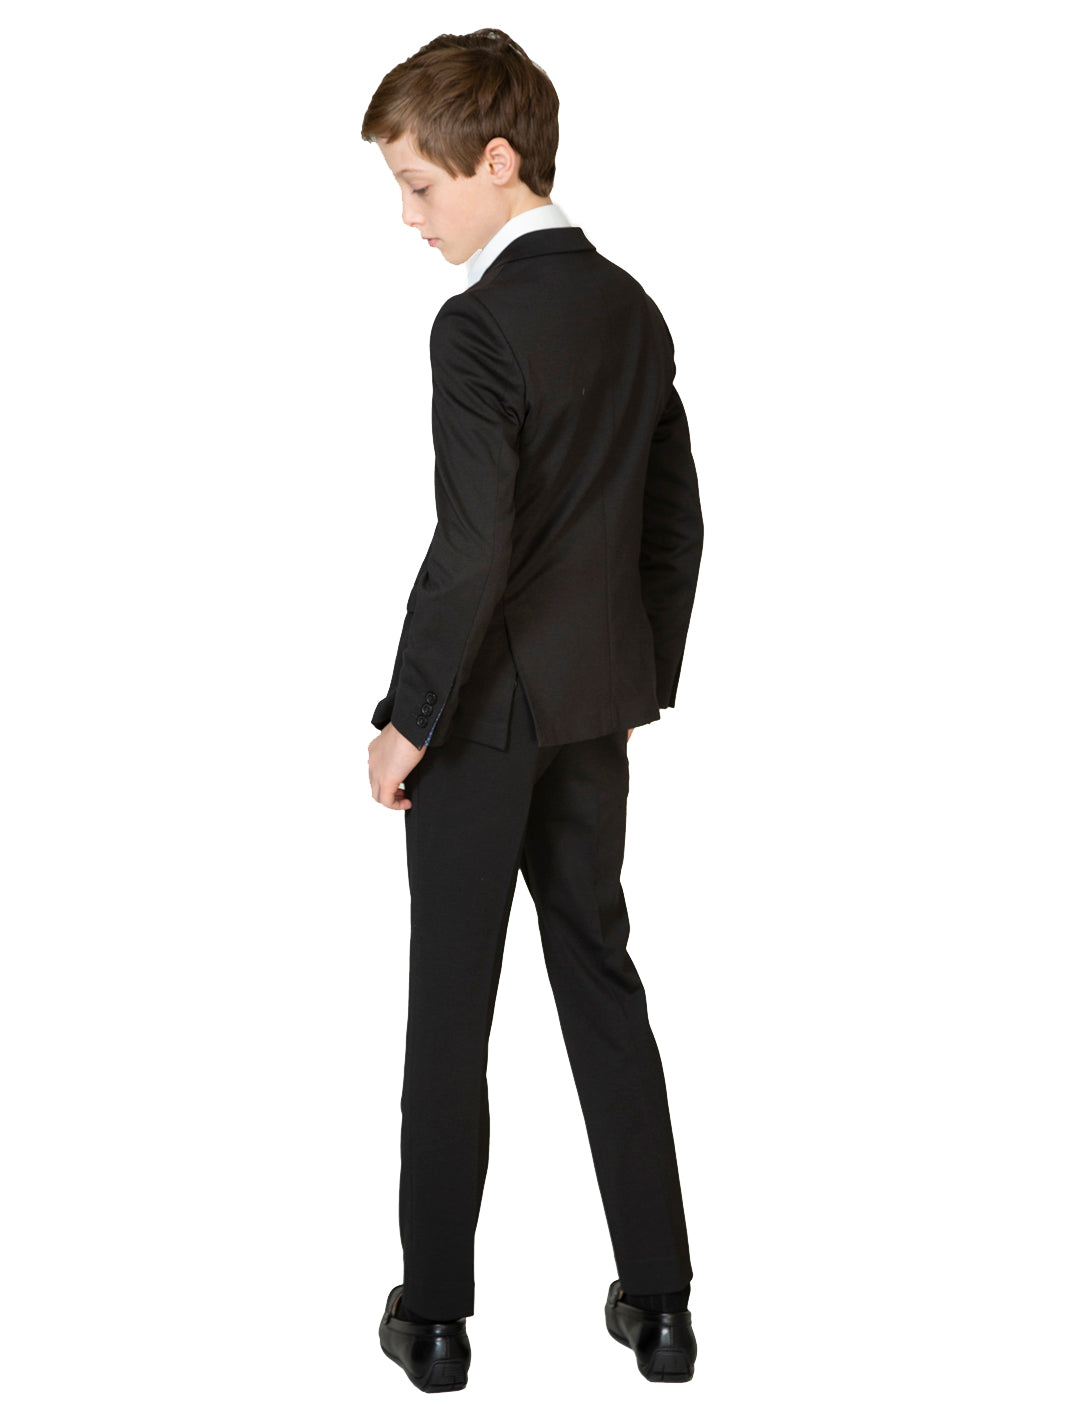 Black Stretch Suit